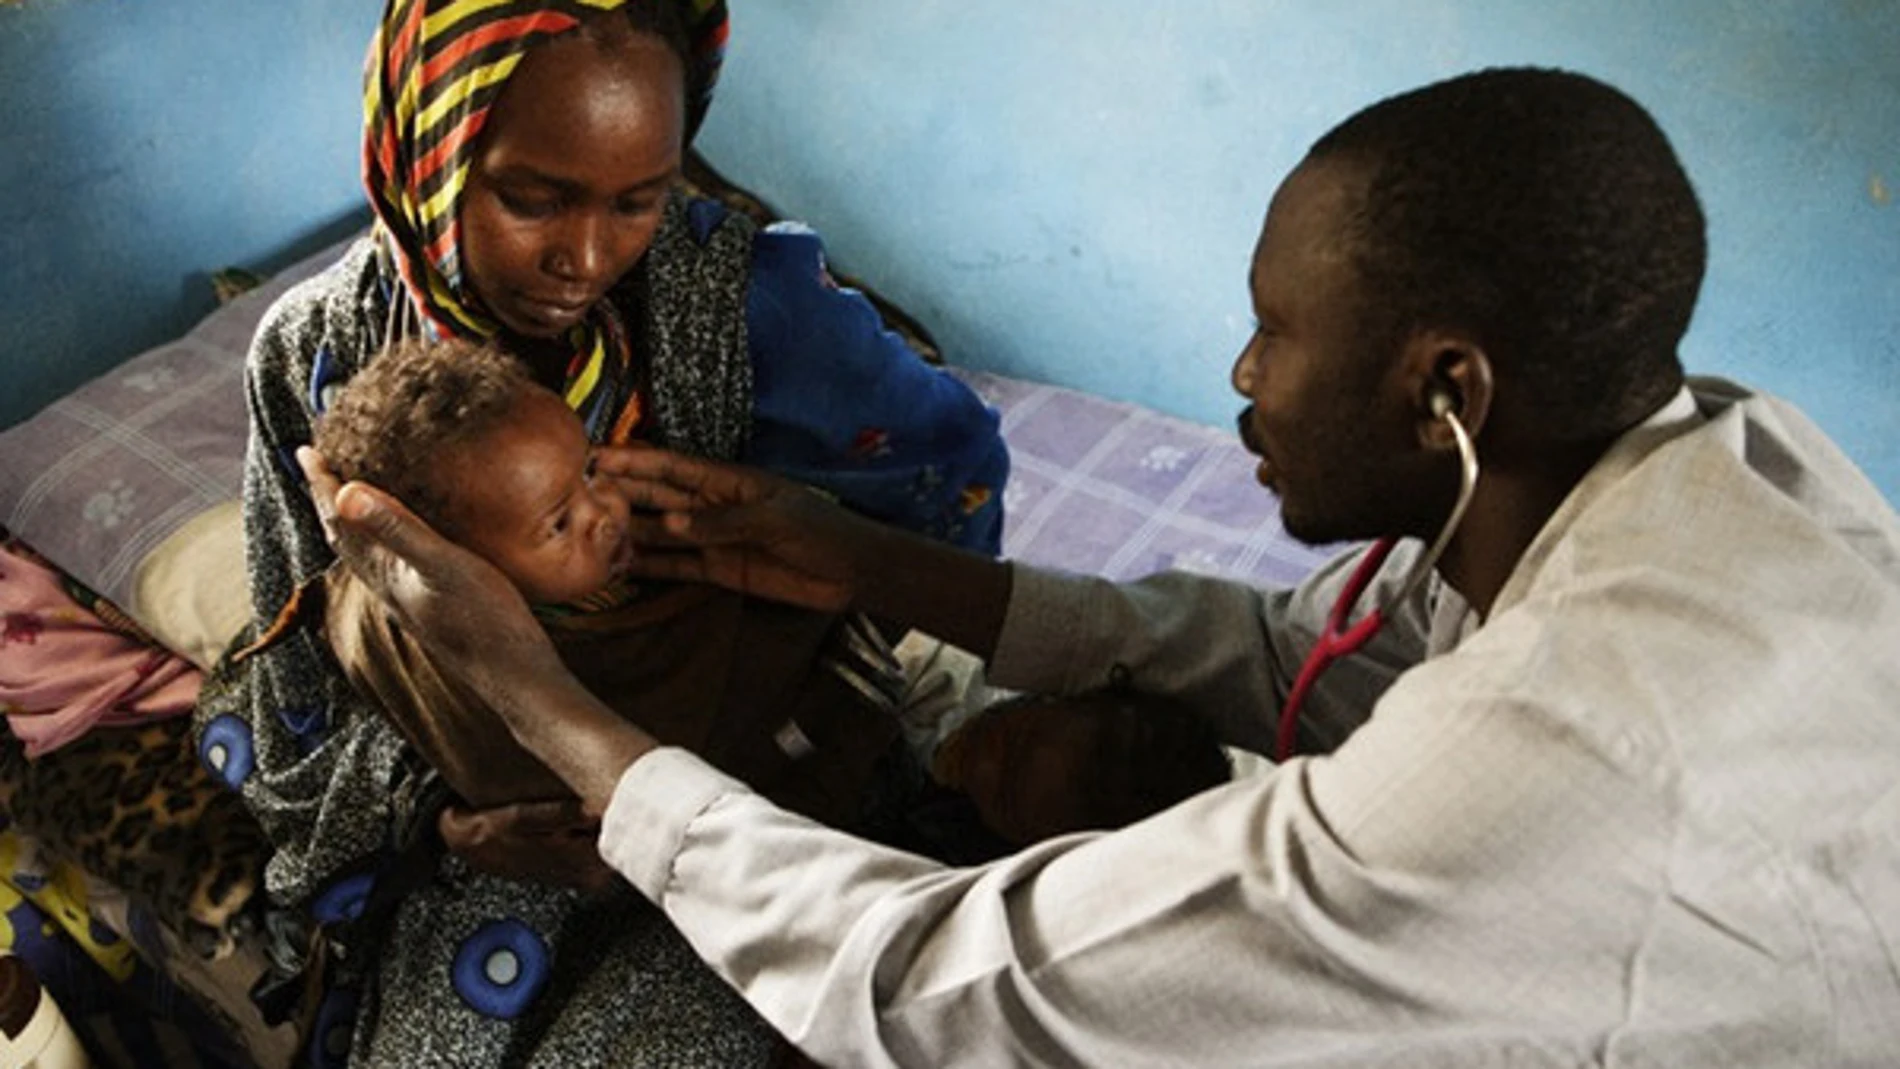 Un doctor examina a un bebé con malnutrición en El Fasher, capital del Estado de Darfur del Norte